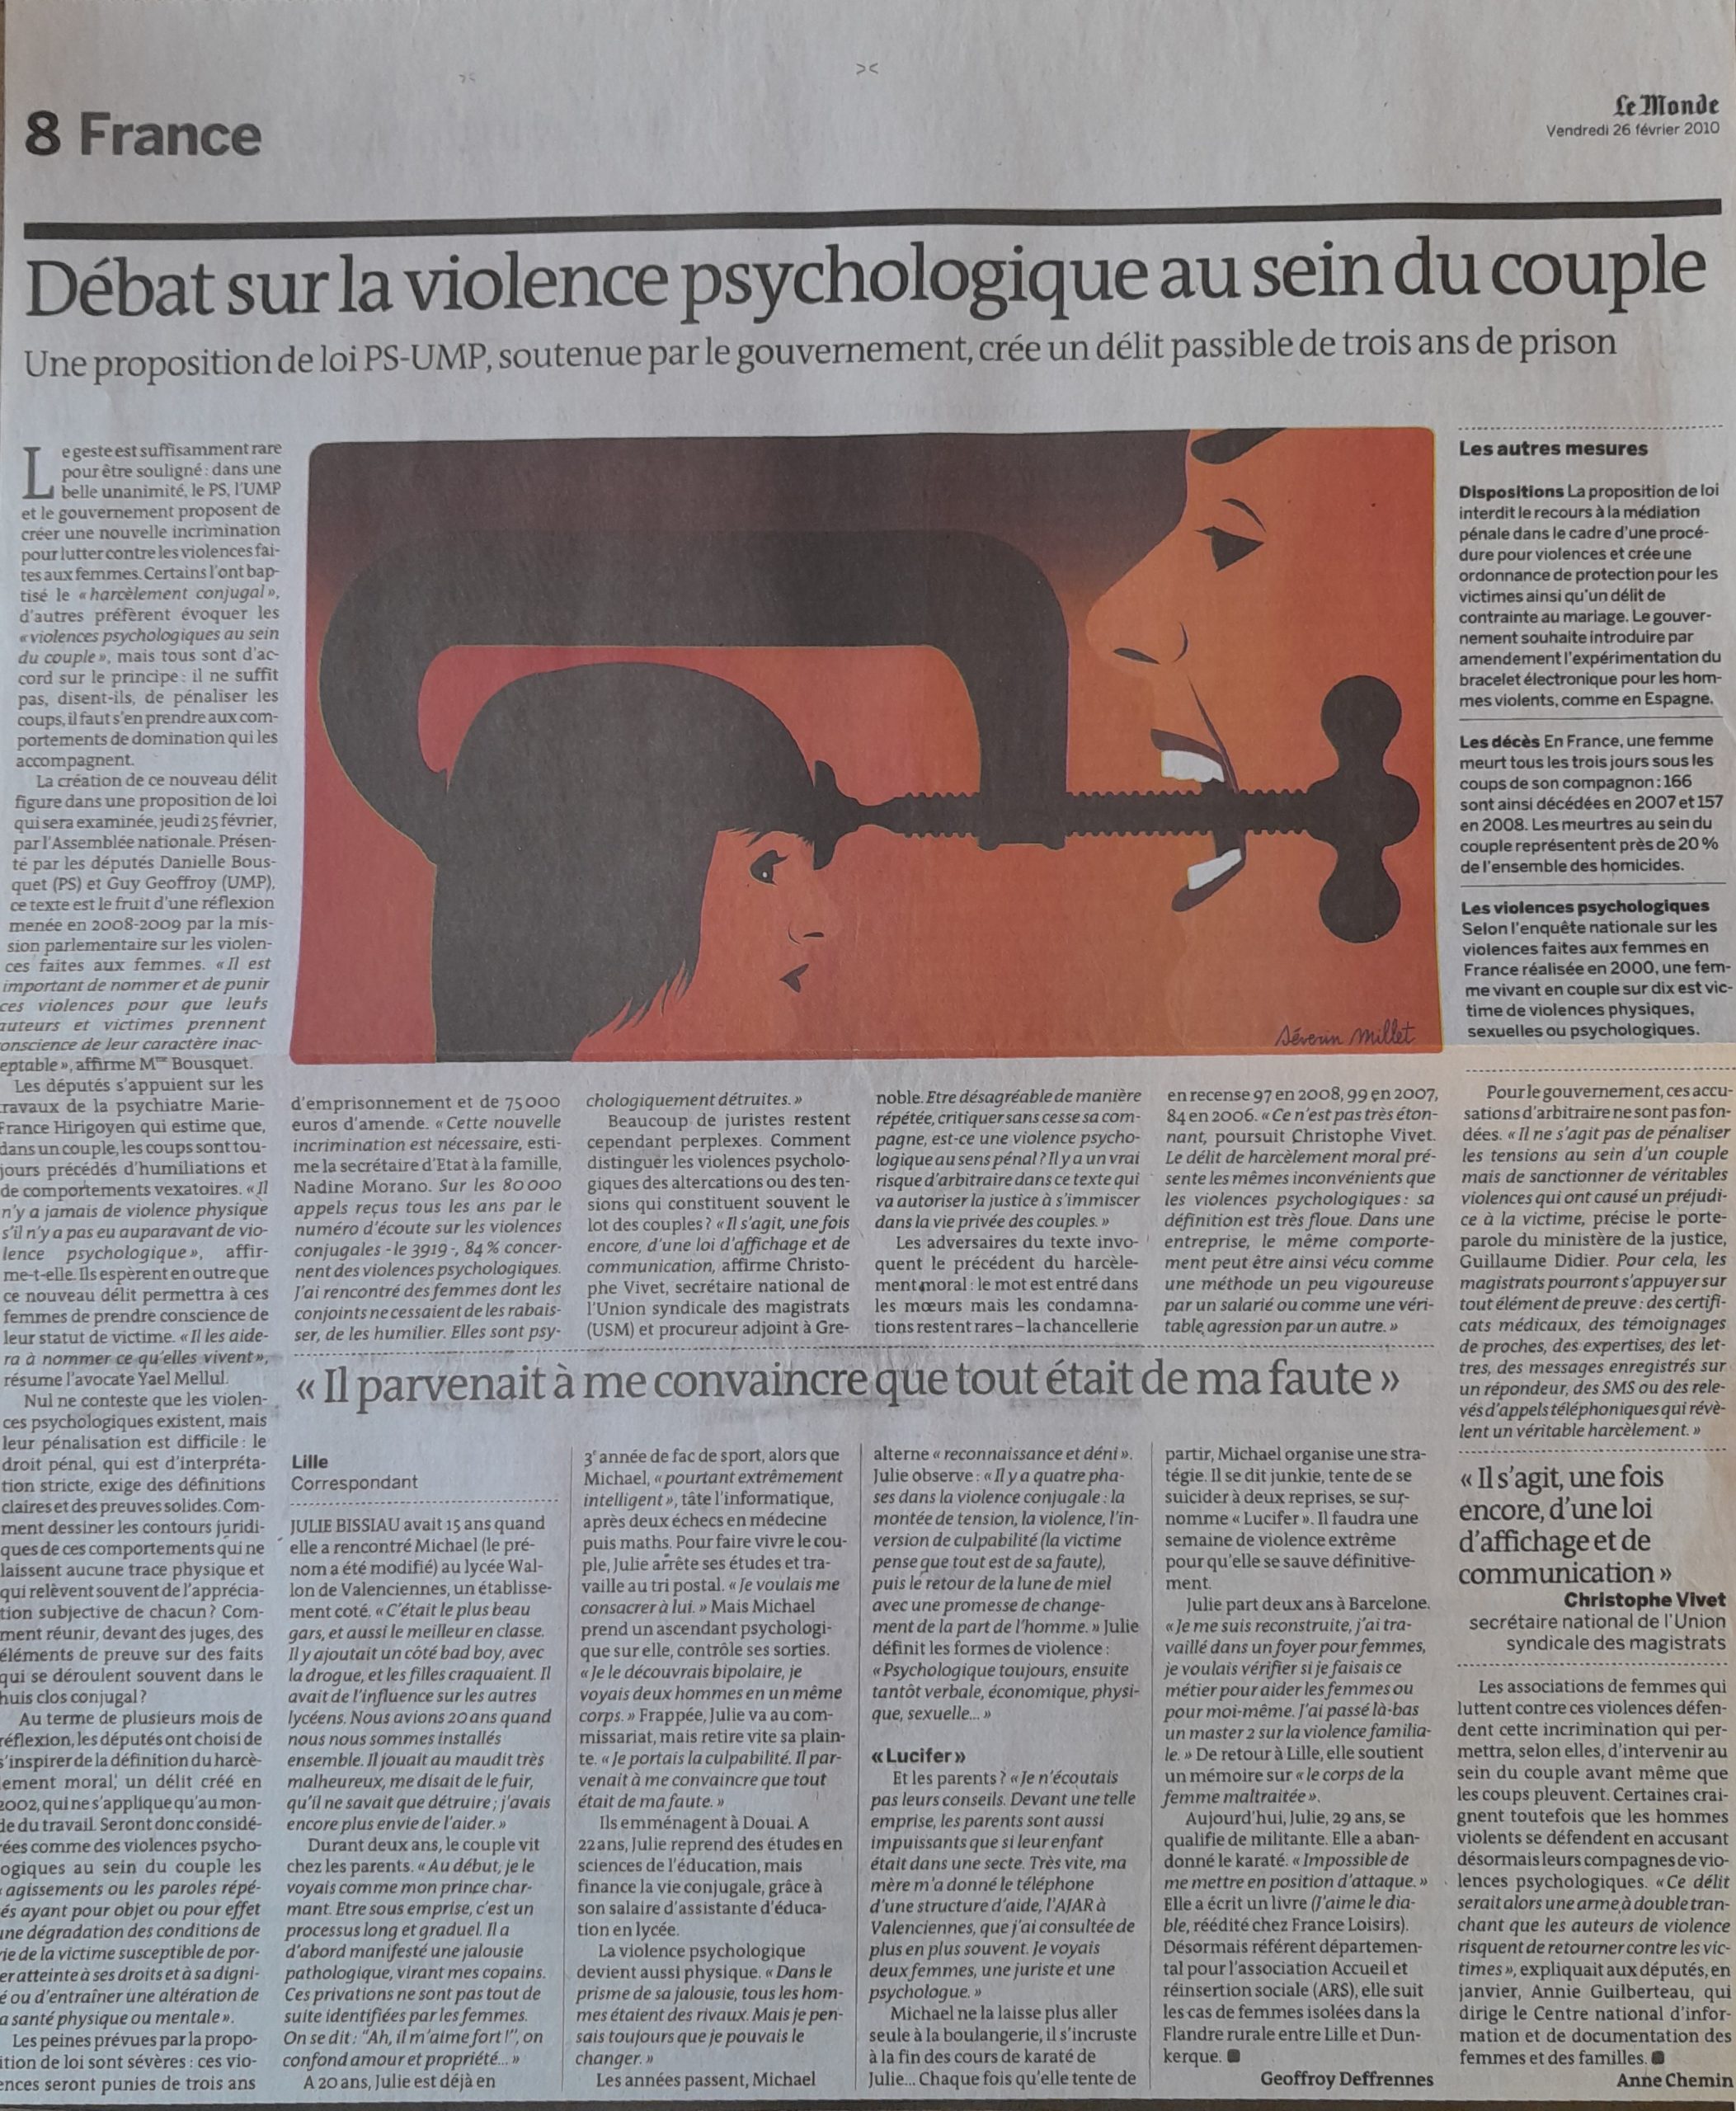 Journal « Le Monde » : L’emprise et l’inversion de culpabilité